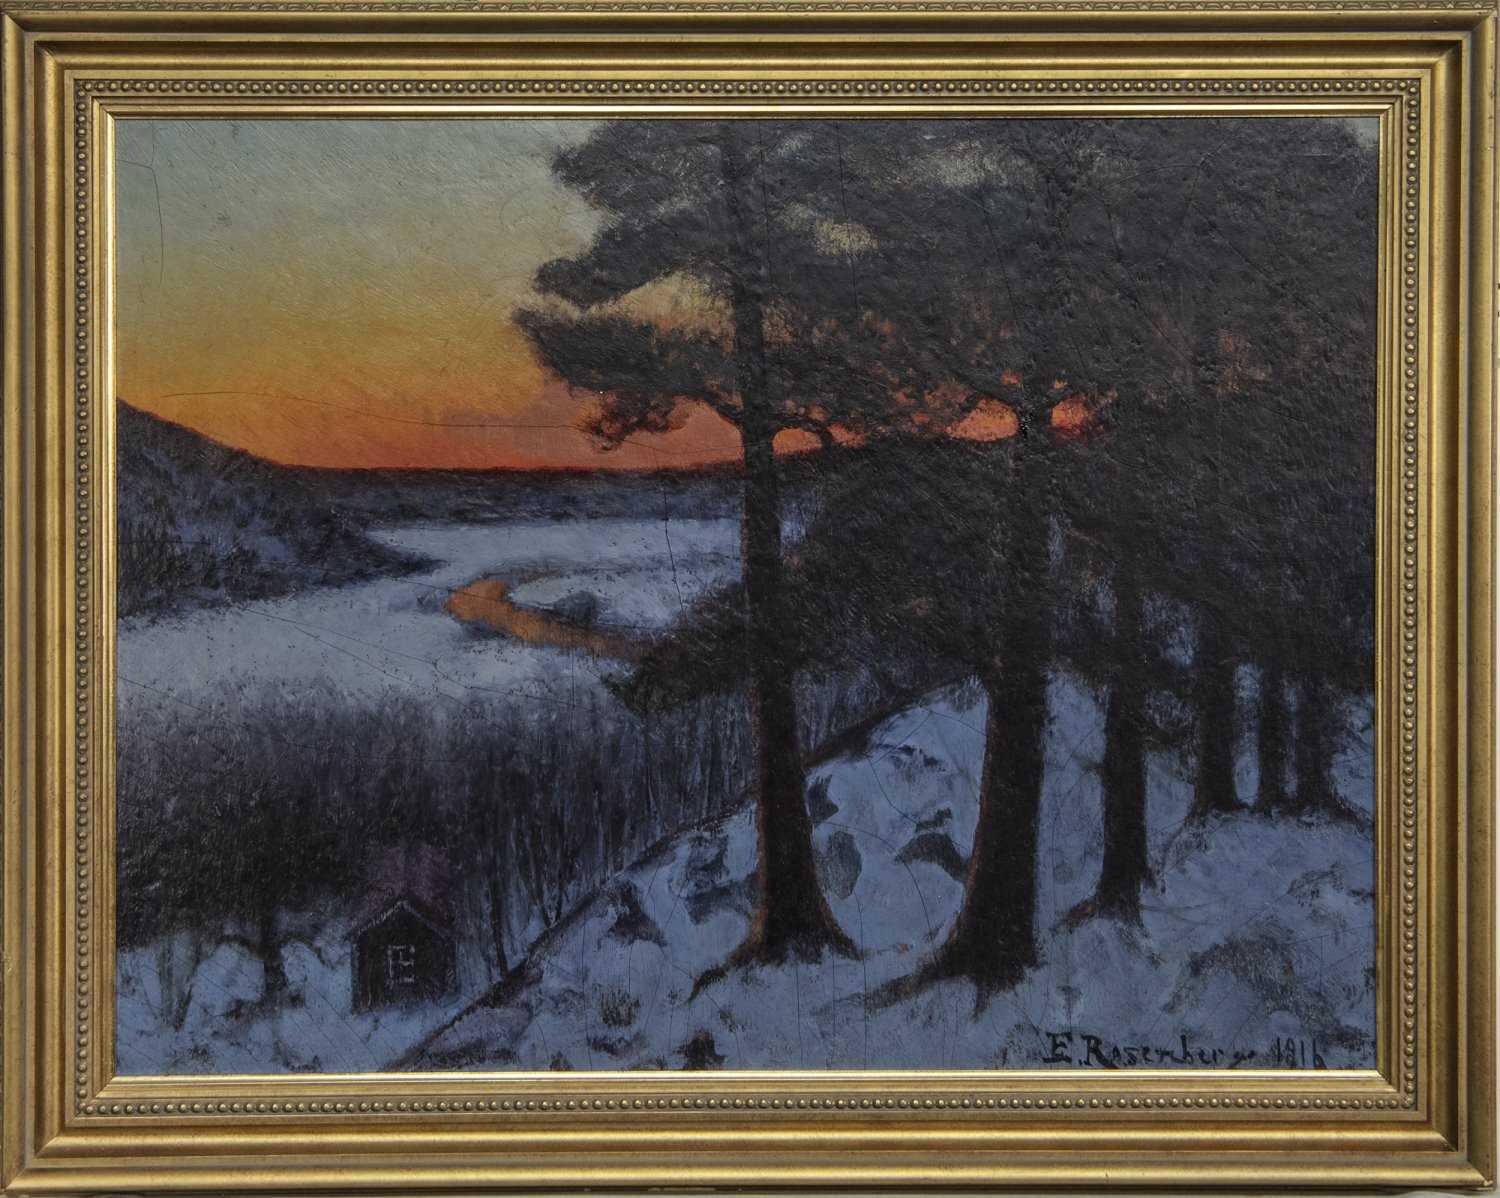 WINTER SUNSET, AN OIL BY EDVARD ROSENBERG